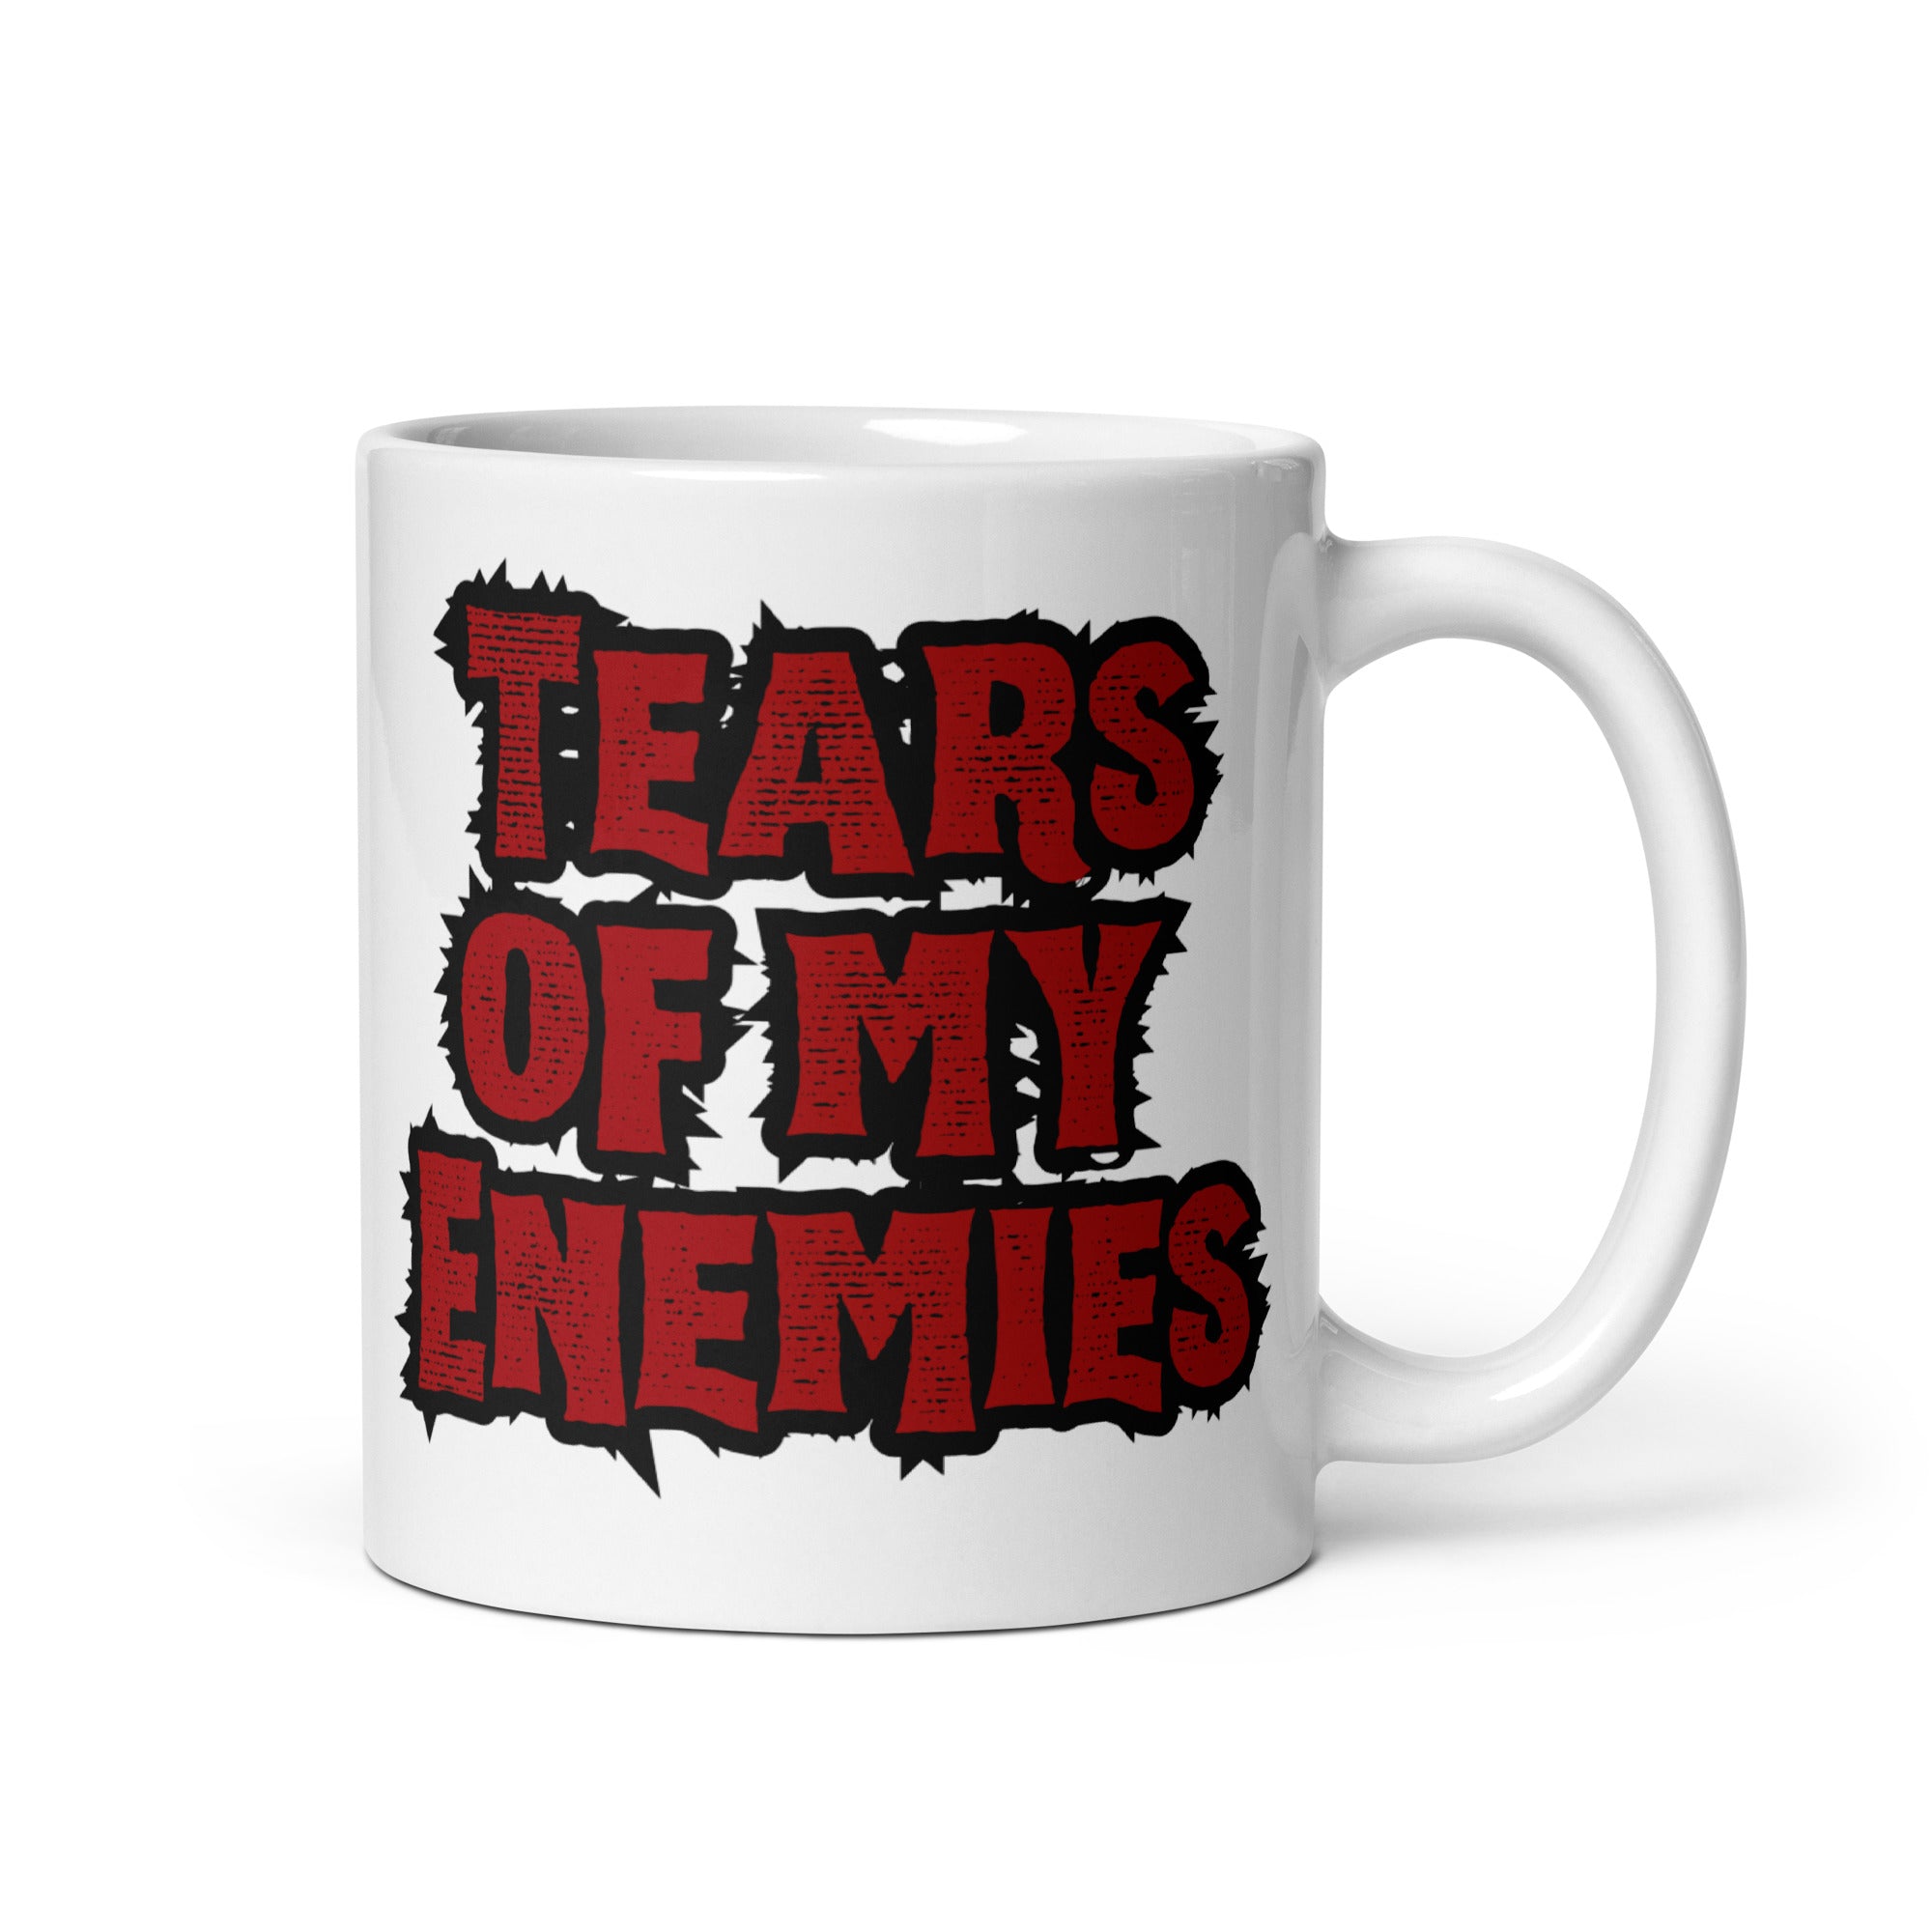 Tears of My Enemies - White Glossy Mug